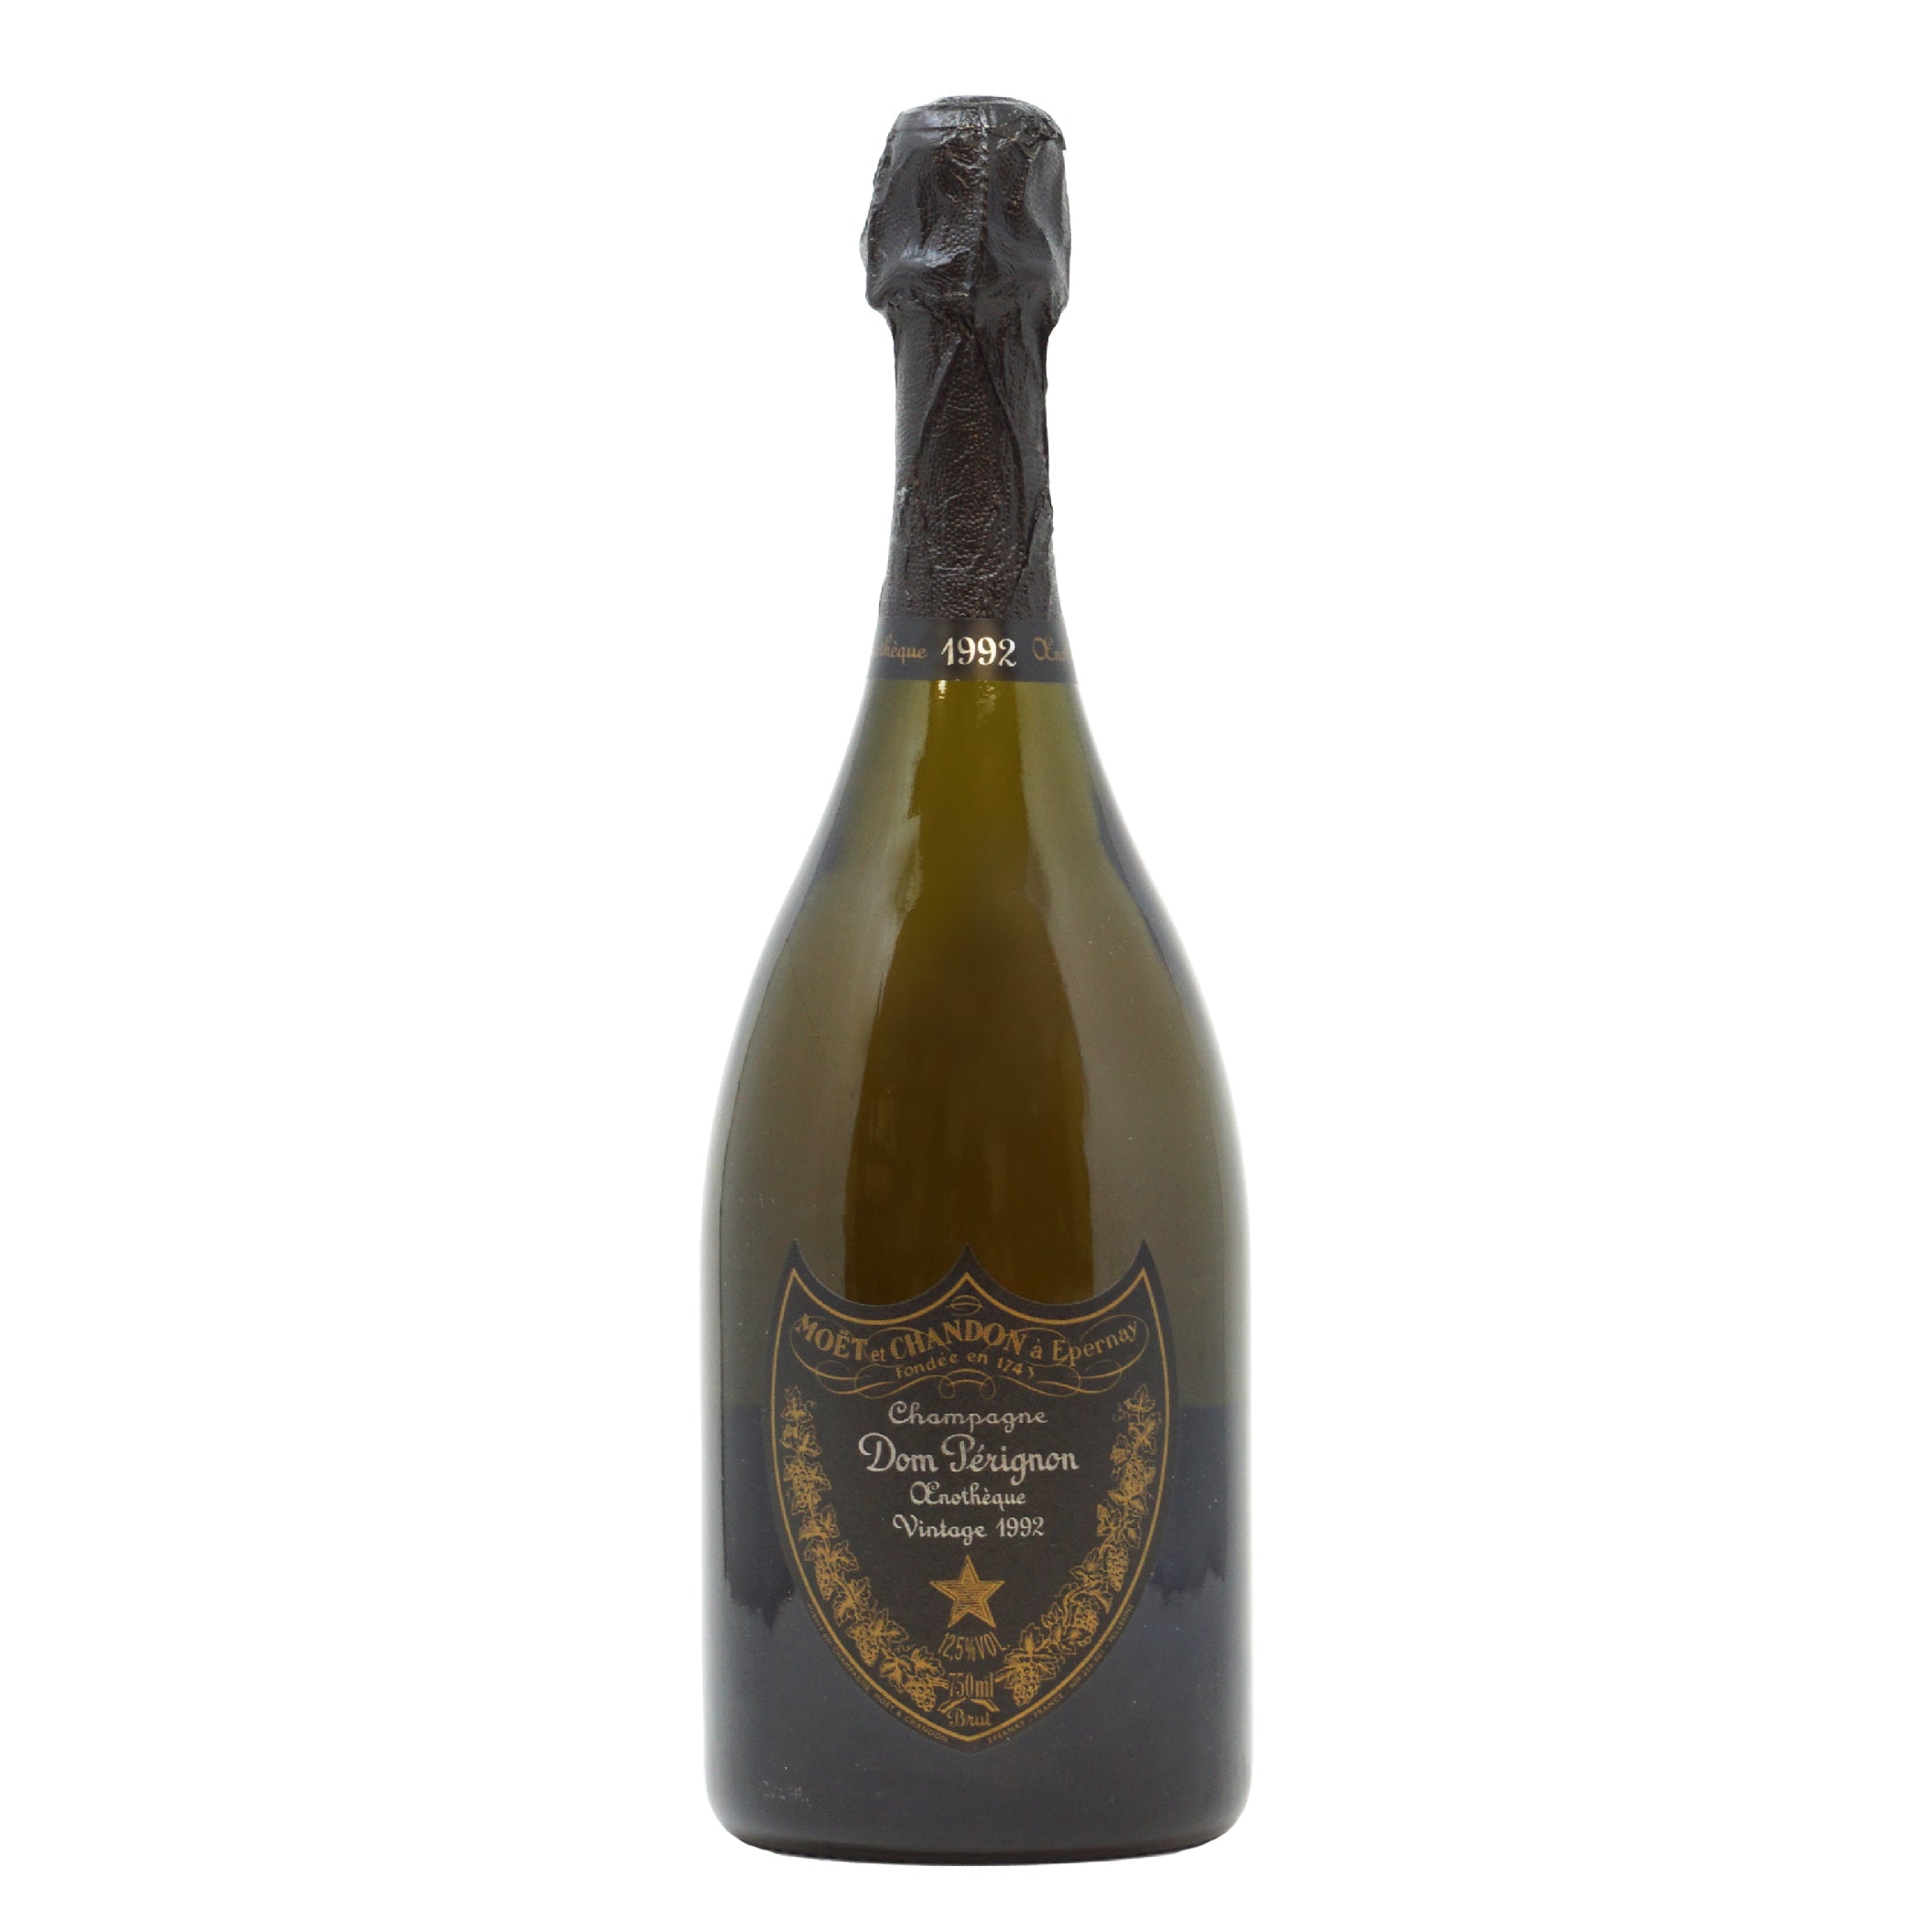 Champagne Dom Perignon 1992 Enotheque Moet&Chandon lt.0,750